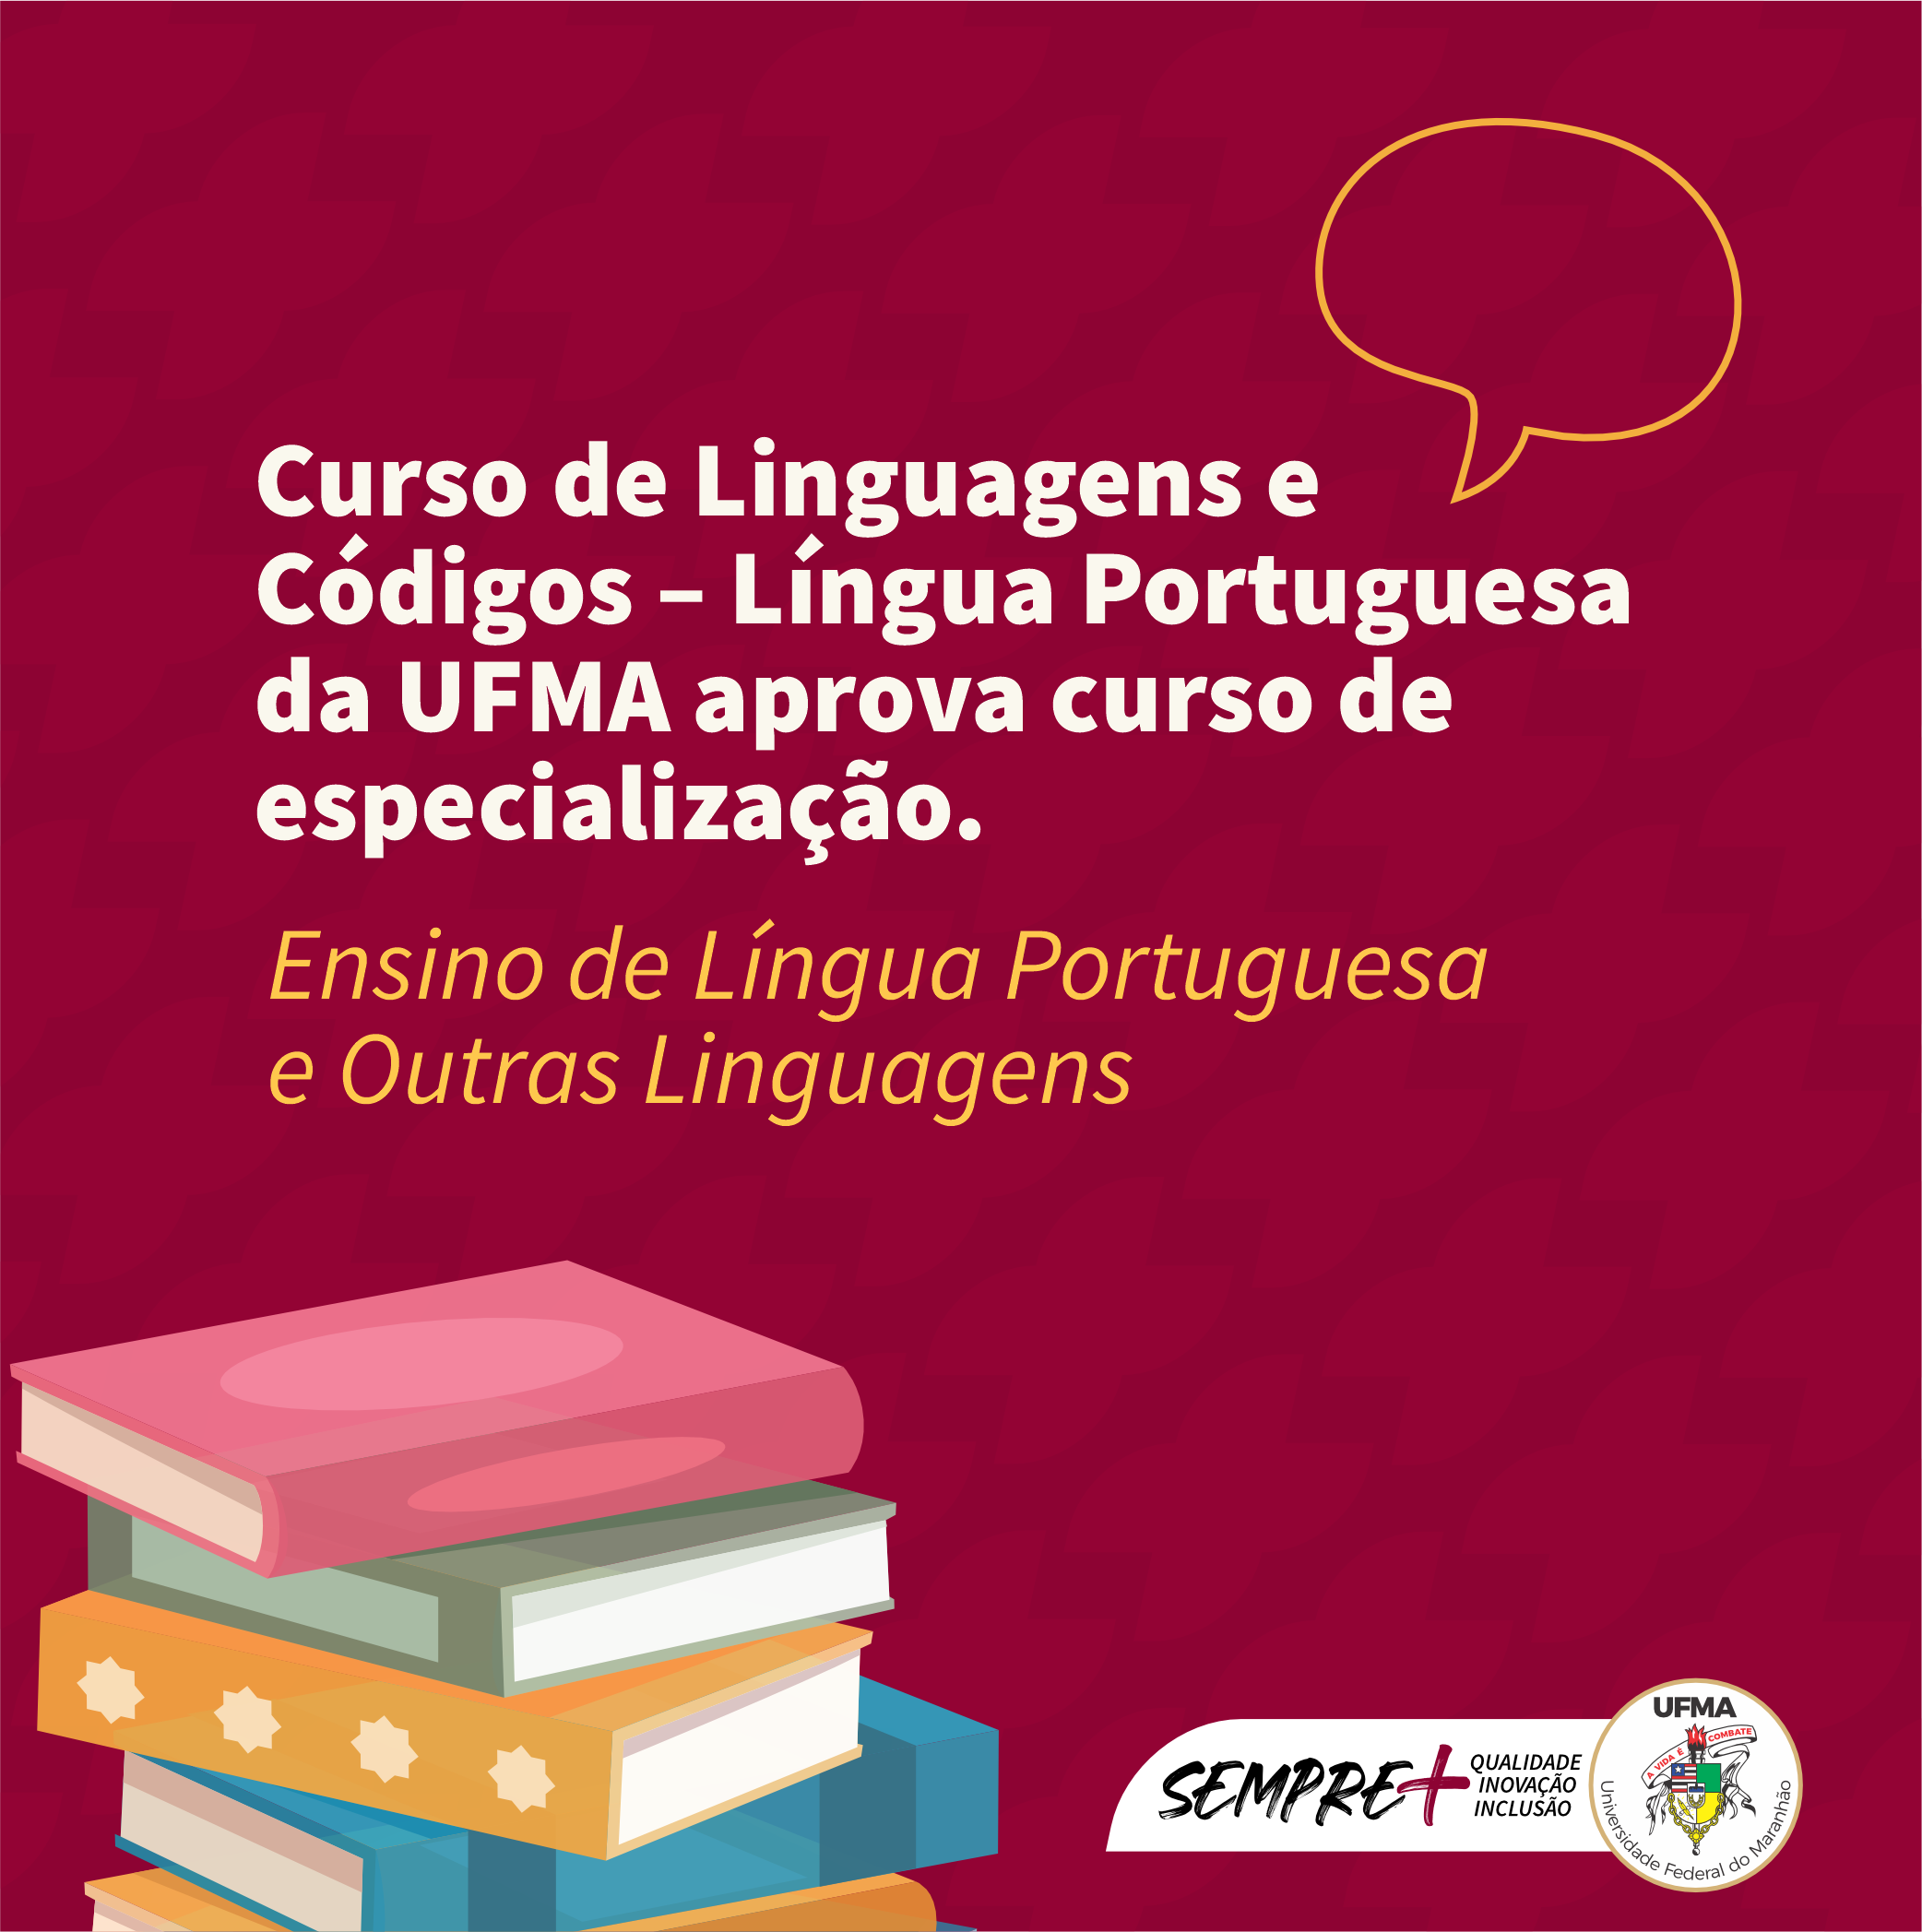 Curso de Linguagens e Códigos – Língua Portuguesa da UFMA aprova curso de especialização em Ensino de Língua Portuguesa e Outras Linguagens